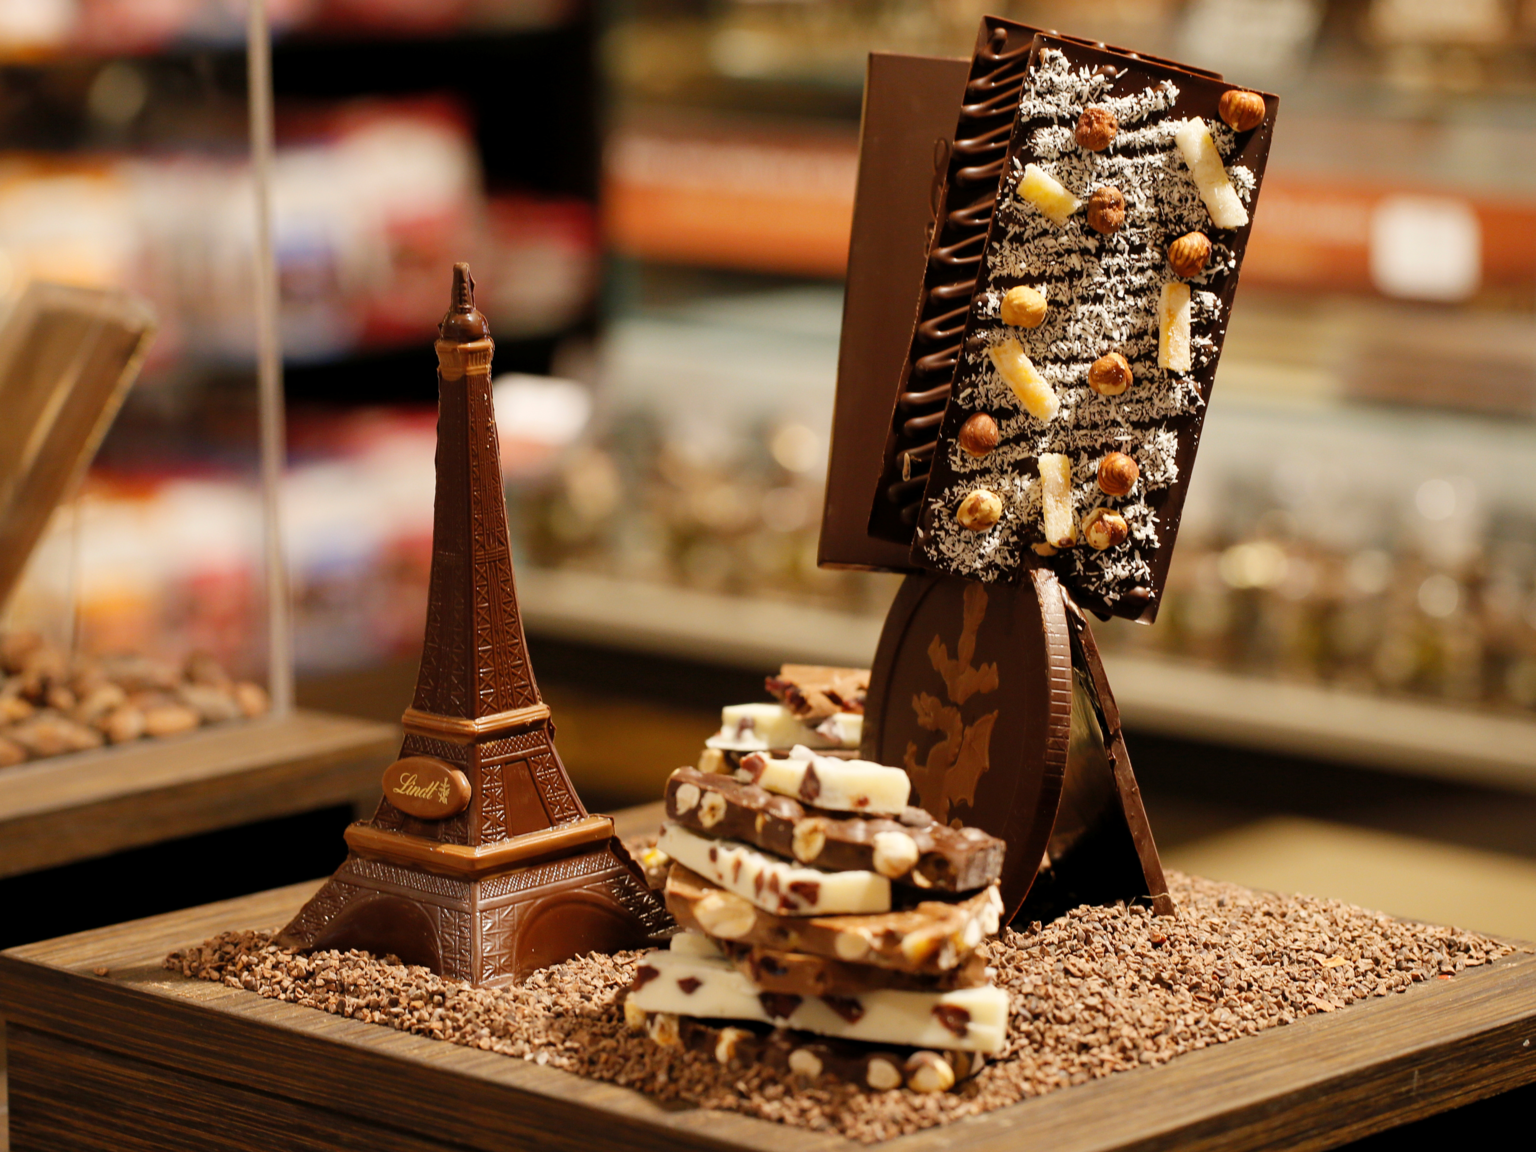 Дорогие сладости. Музей шоколада в Париже «Choco-story». Музей шоколада, Париж, Франция. Необычные шоколадные конфеты. Французский шоколад.